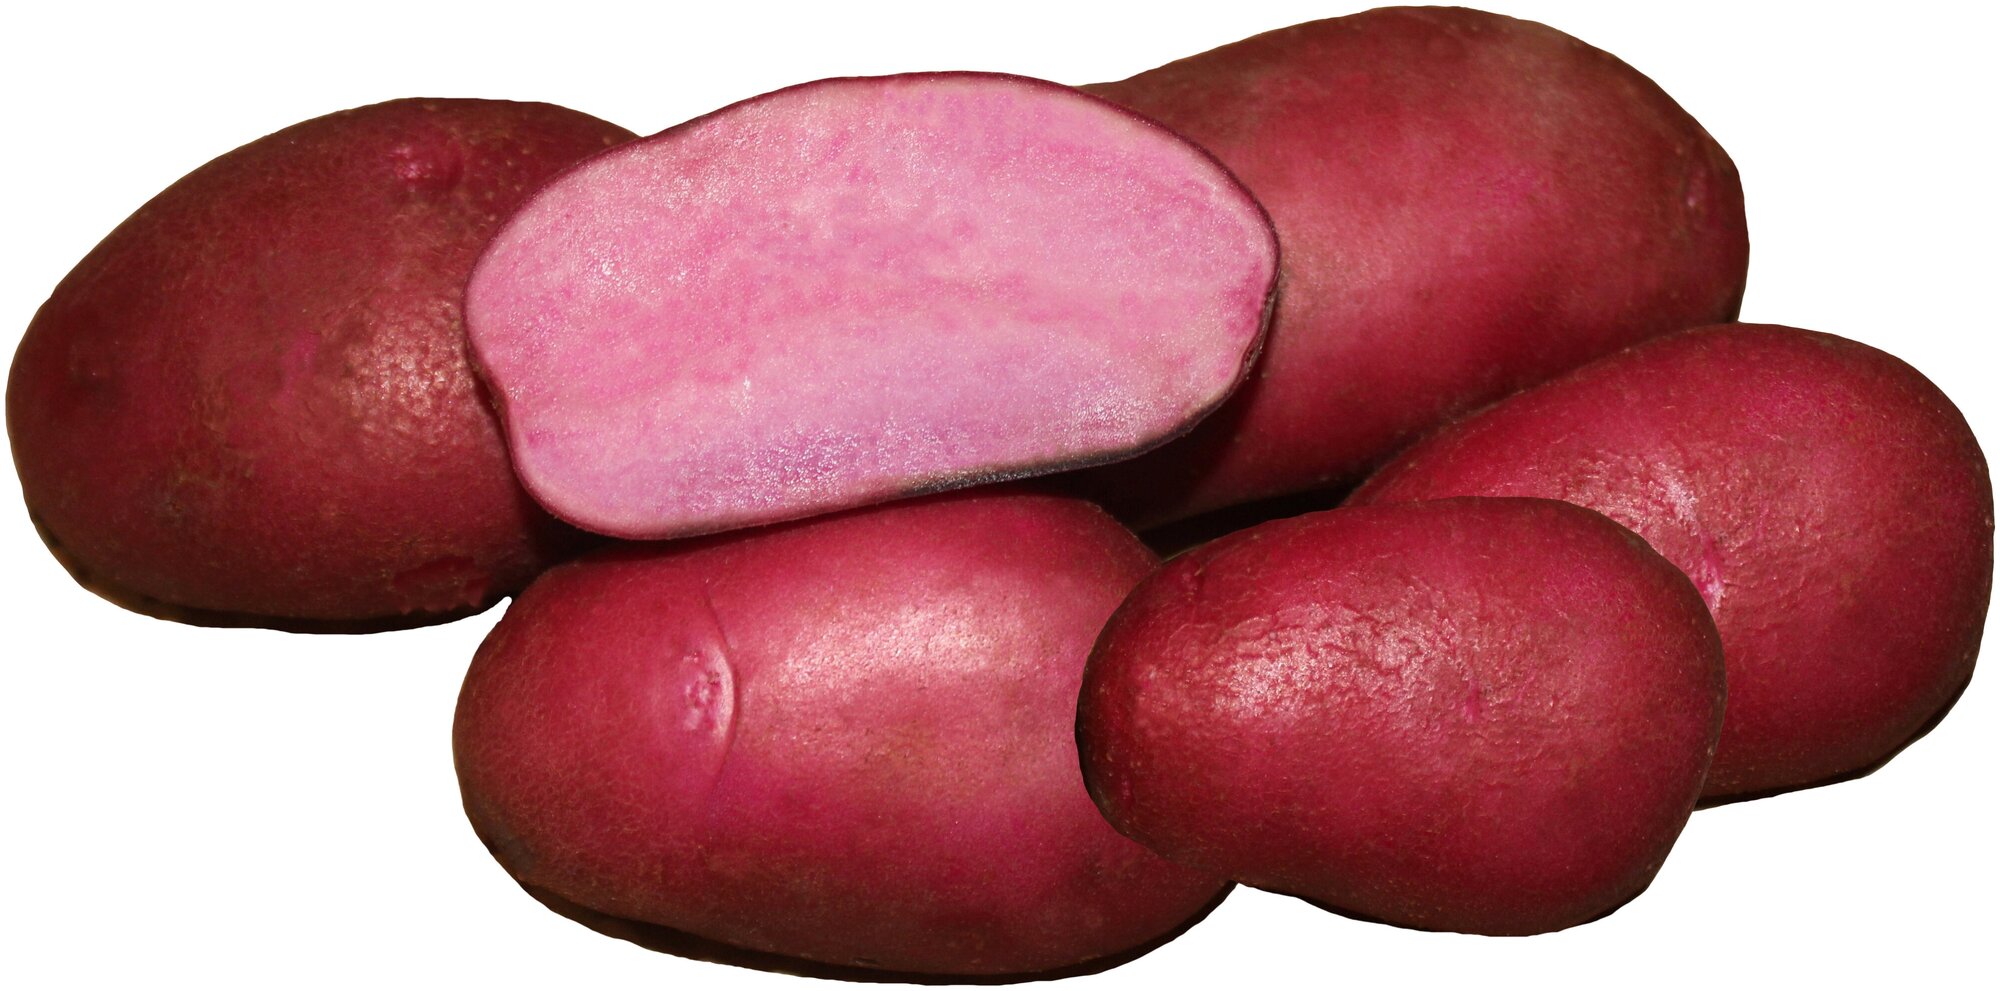 Картофель семенной сорт Сюрприз